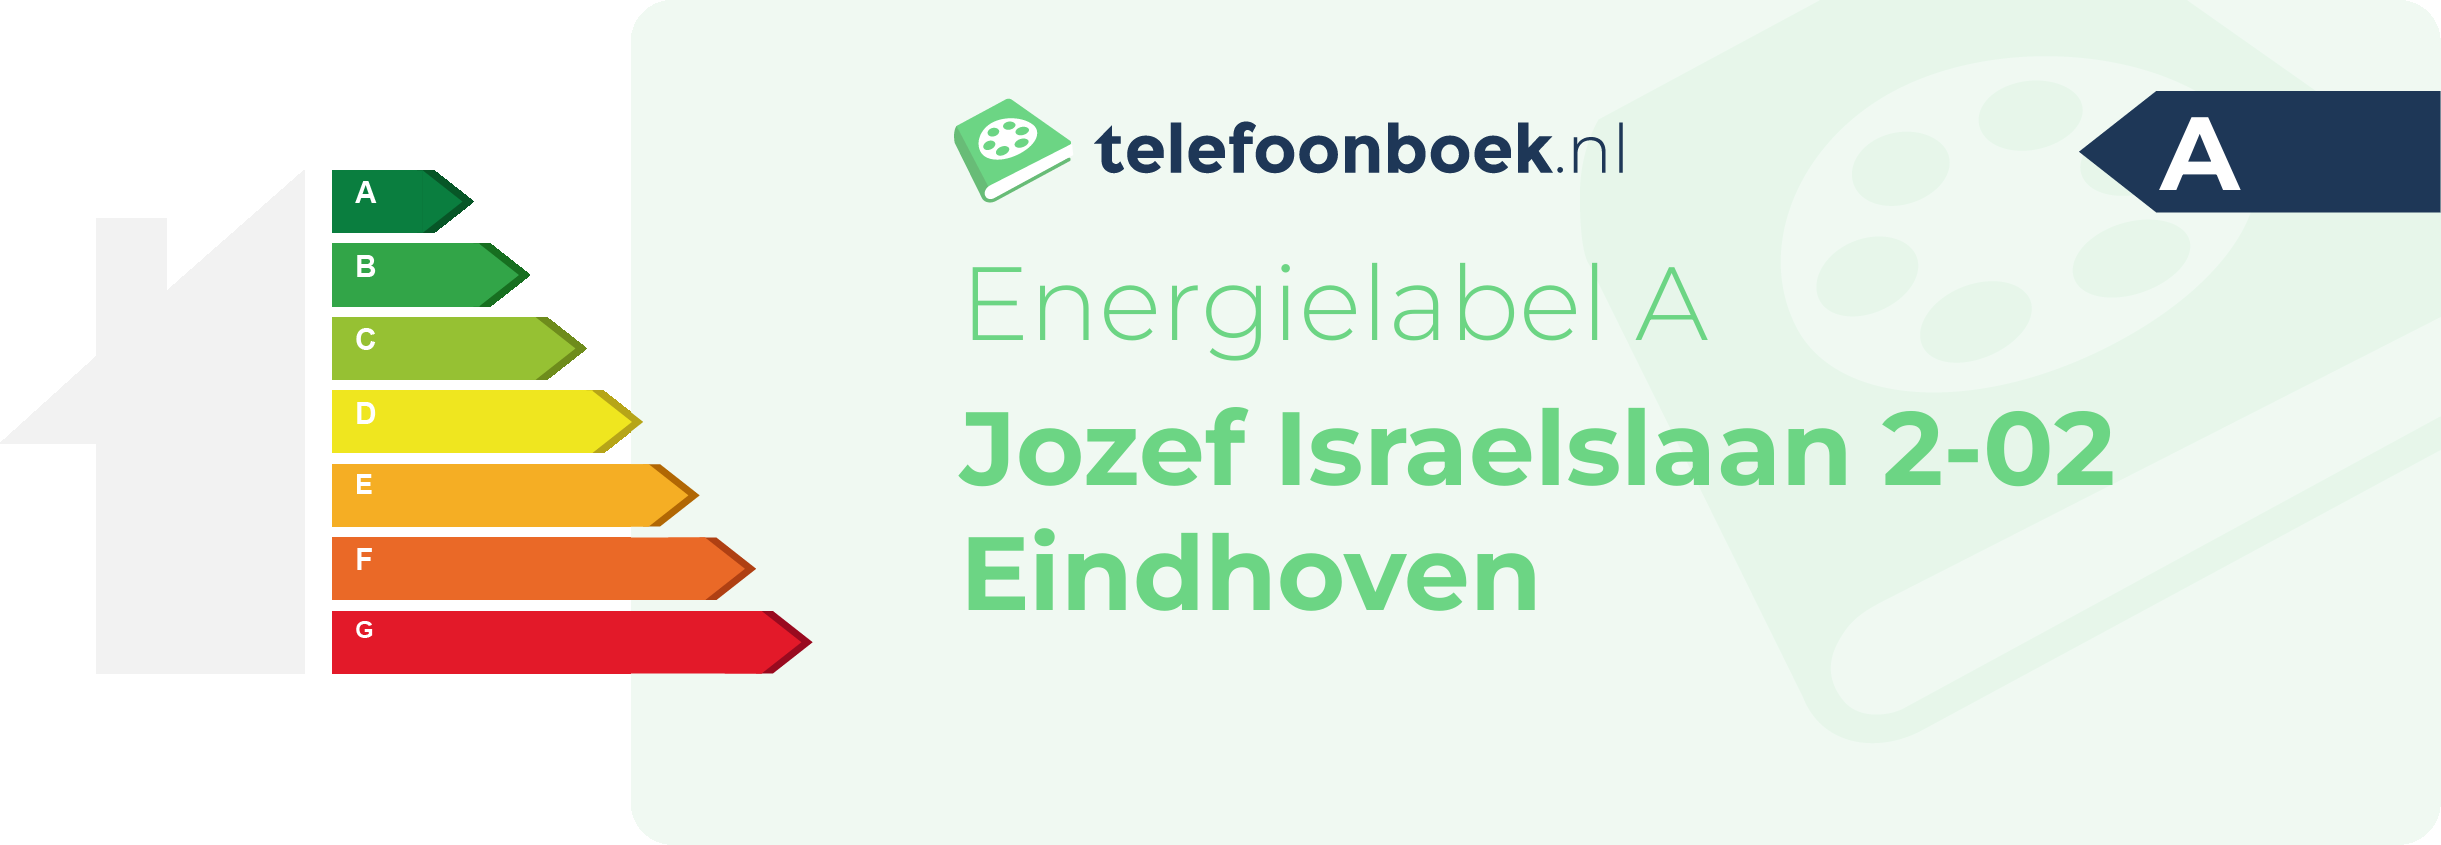 Energielabel Jozef Israelslaan 2-02 Eindhoven